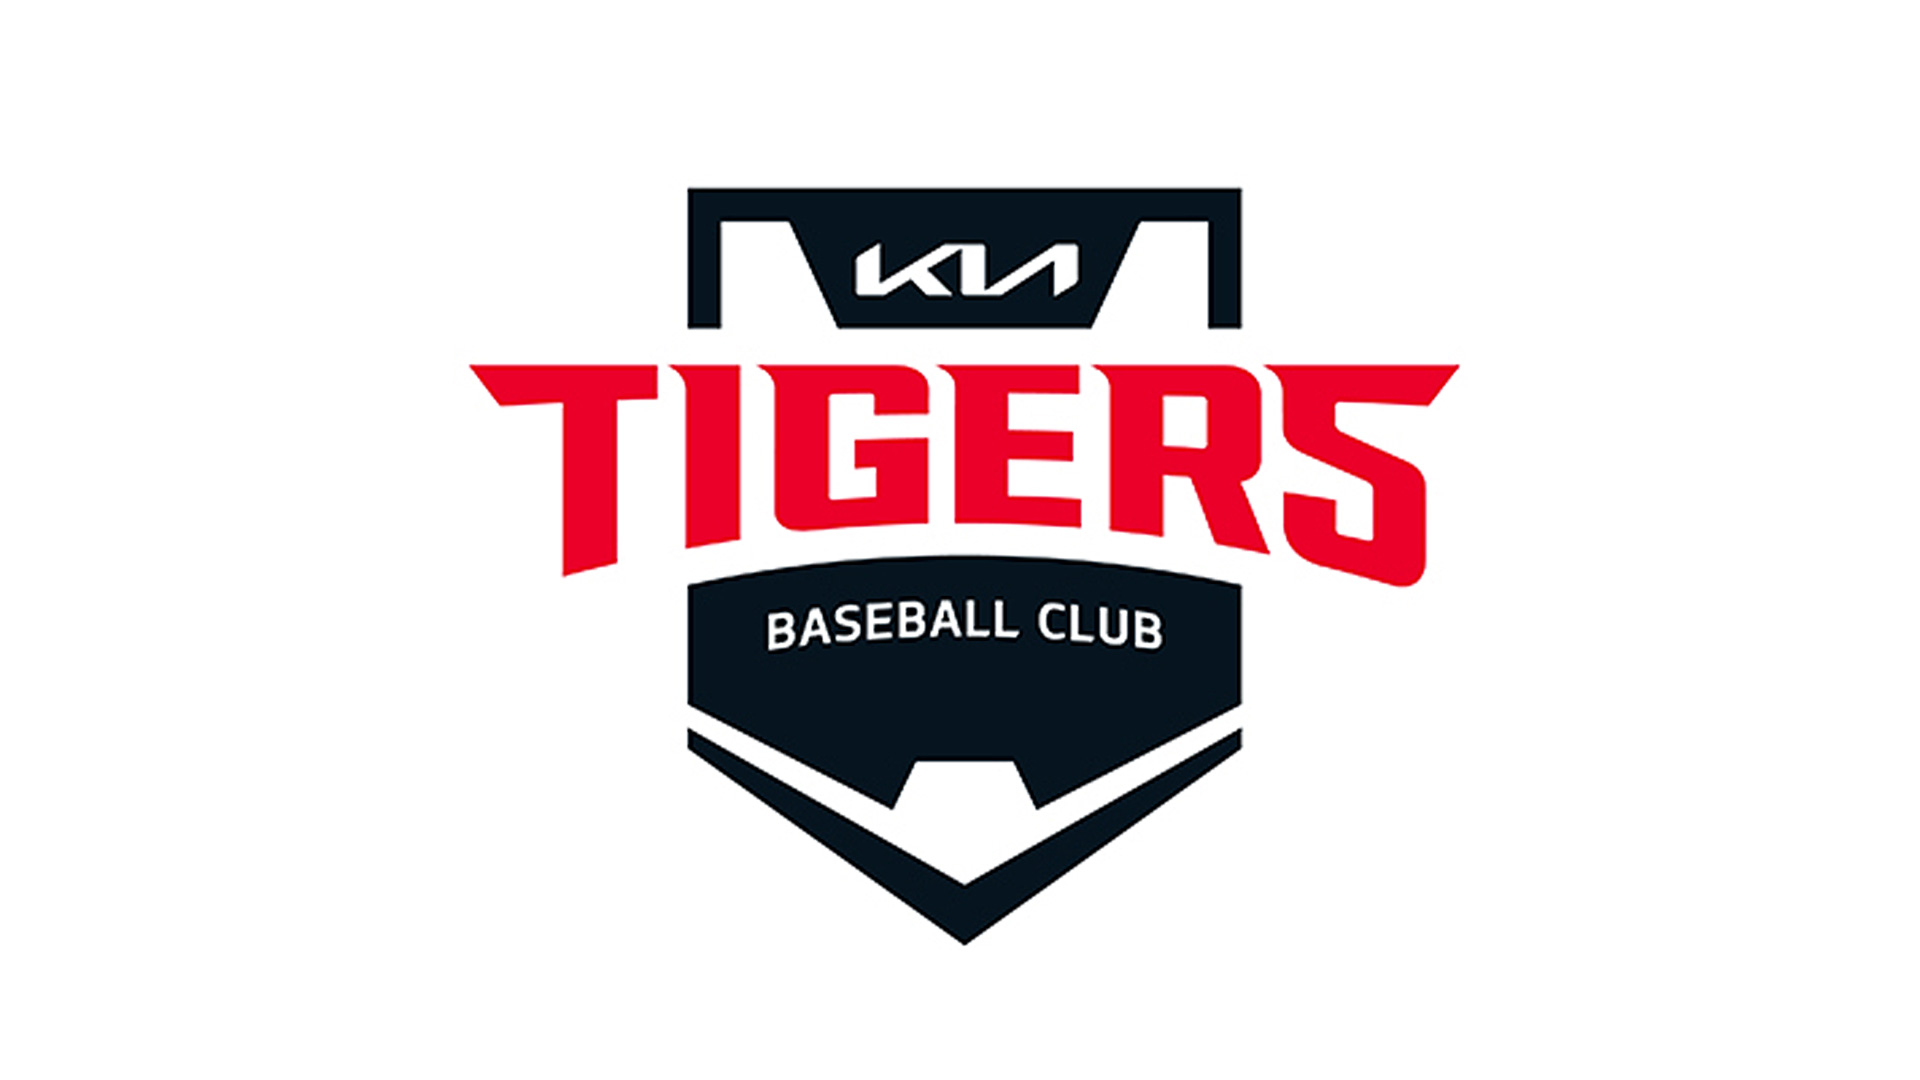 2021 New emblem image of KIA Tigers baseball club